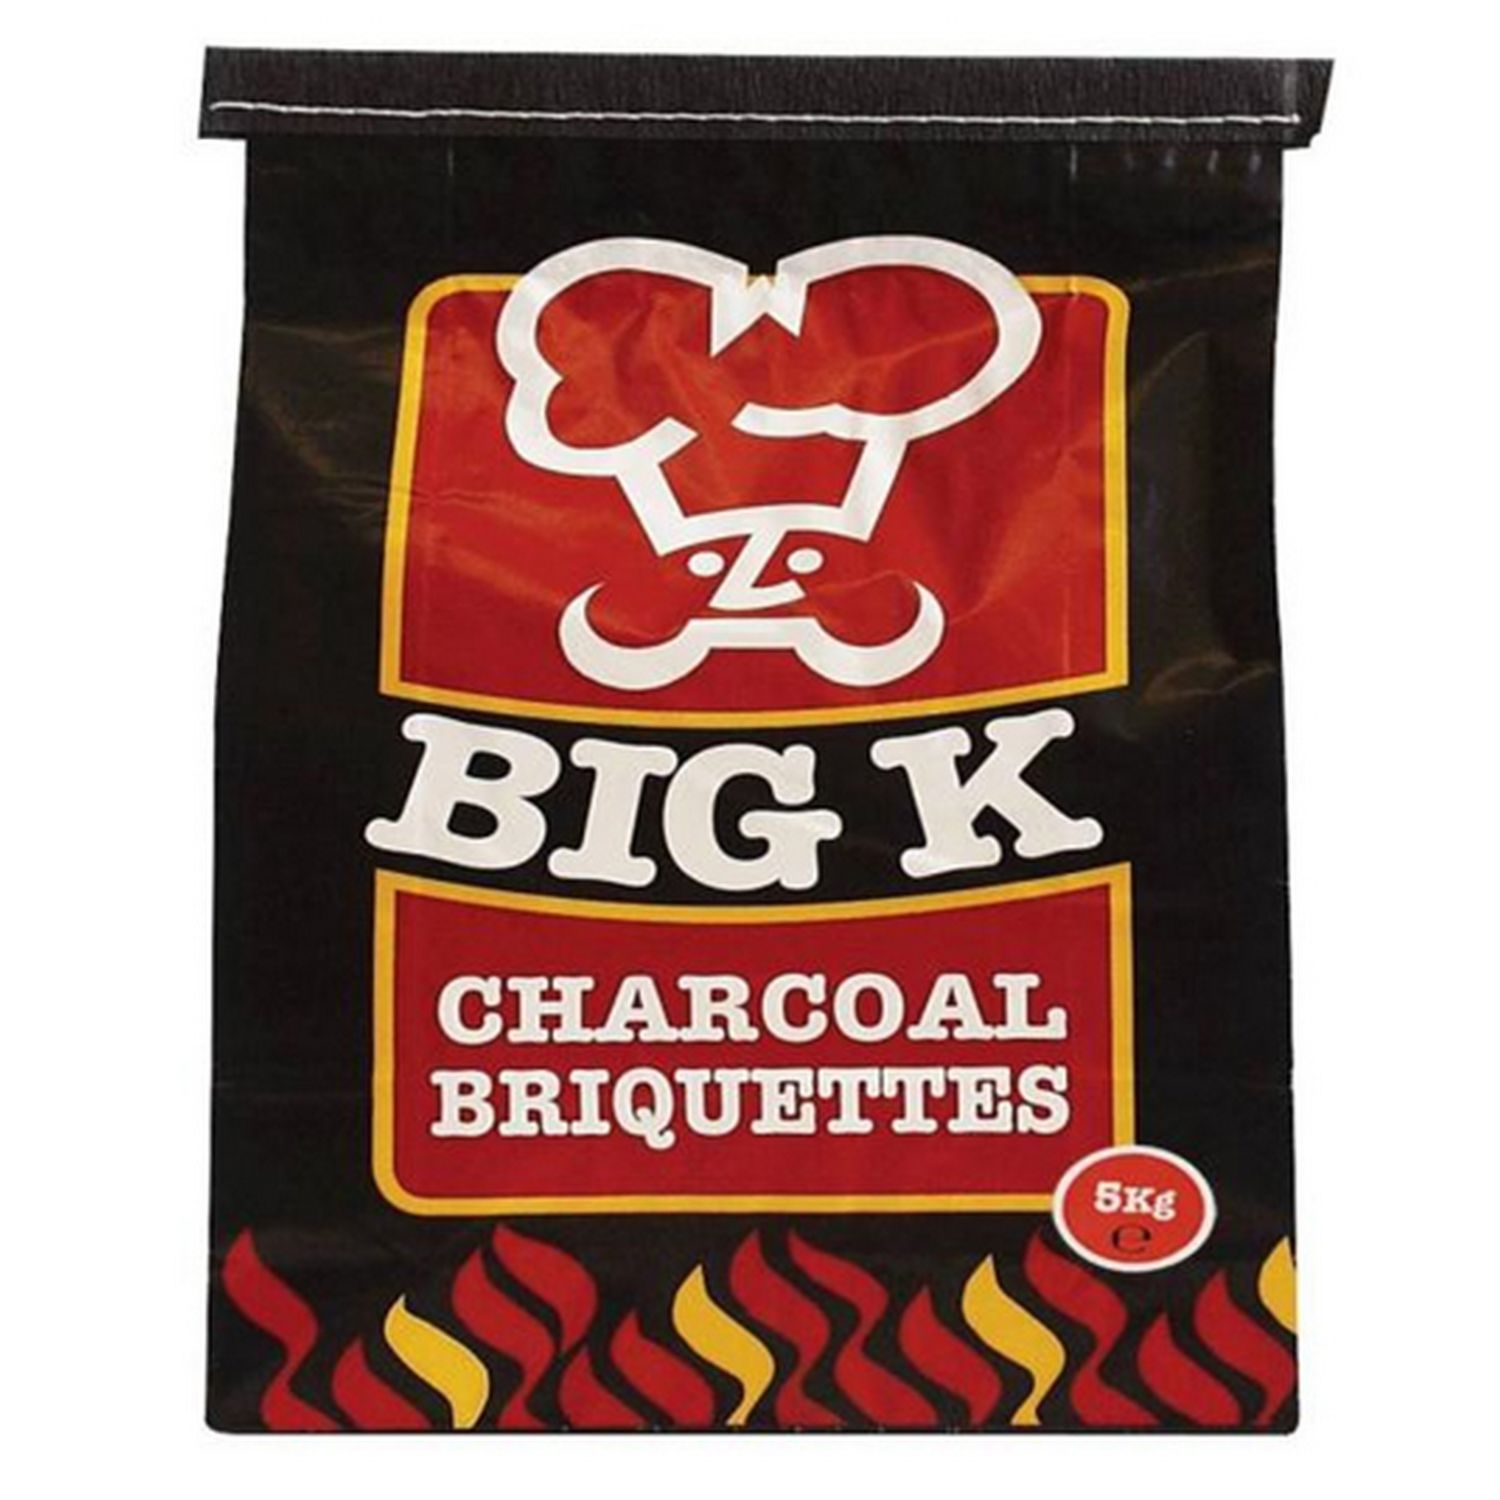 Big K Charcoal Briquettes Image